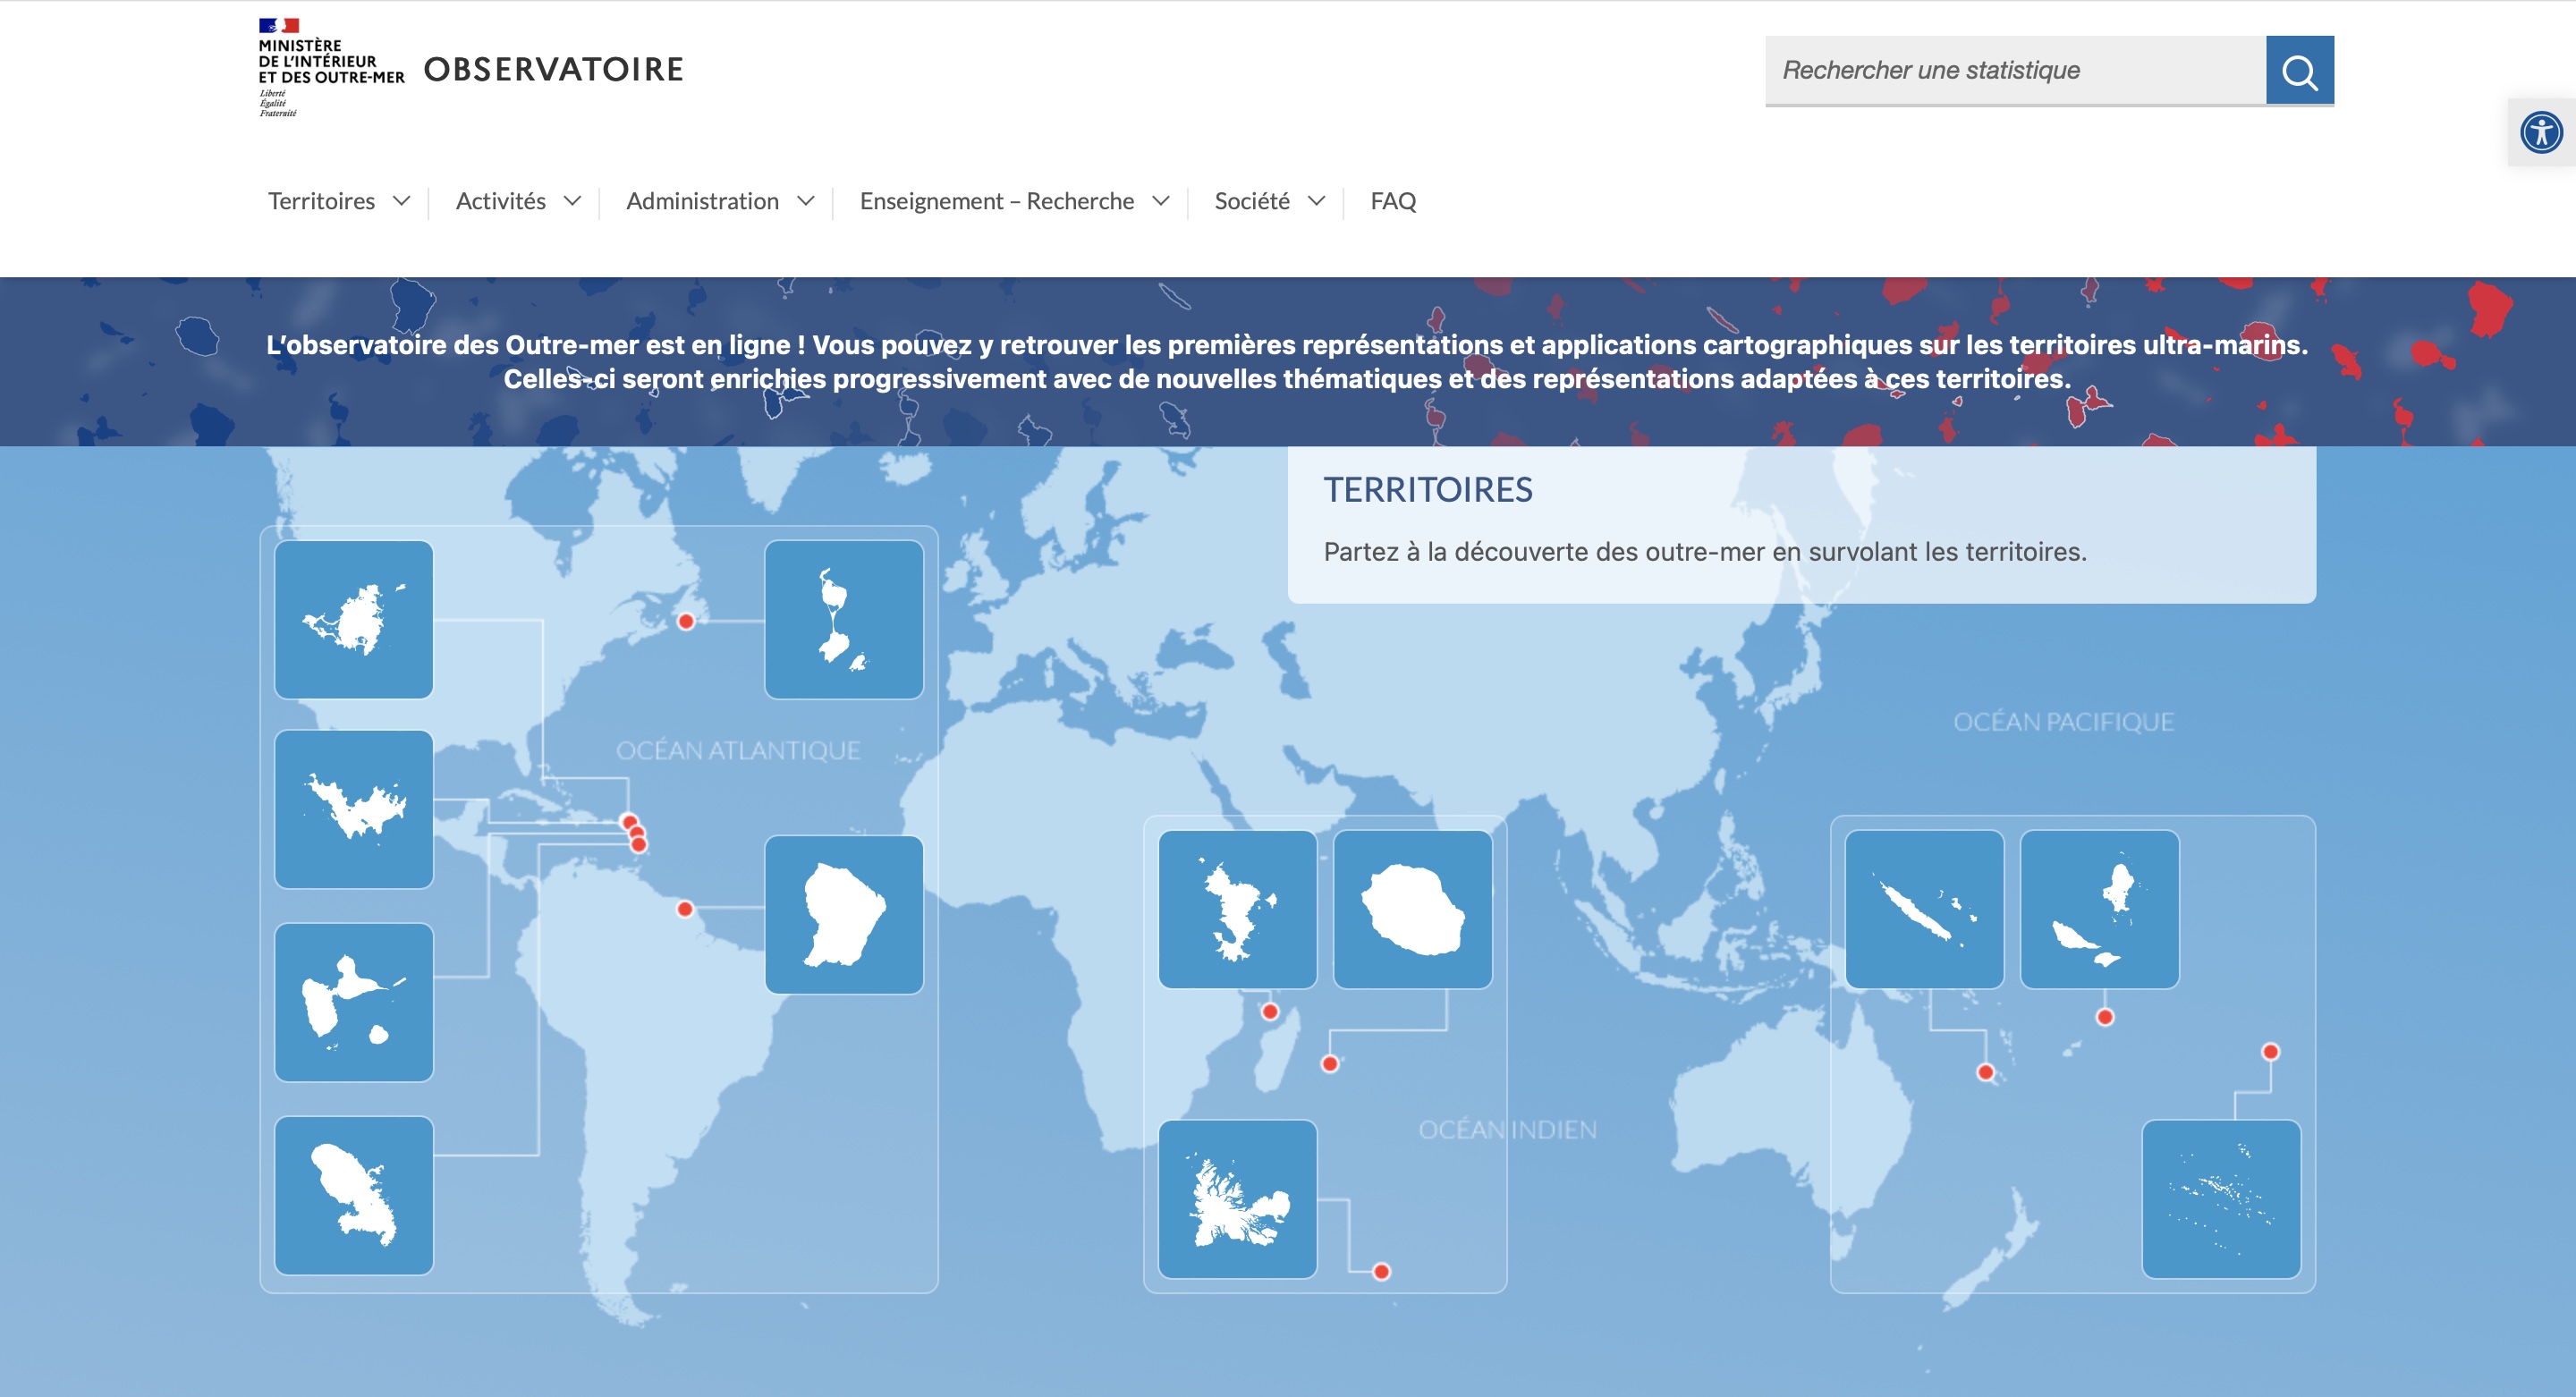 Le ministère de l'intérieur et des Outre-mer créé le portail Observatoire, une application qui met à disposition des données statistiques sur les territoires ultra-marins